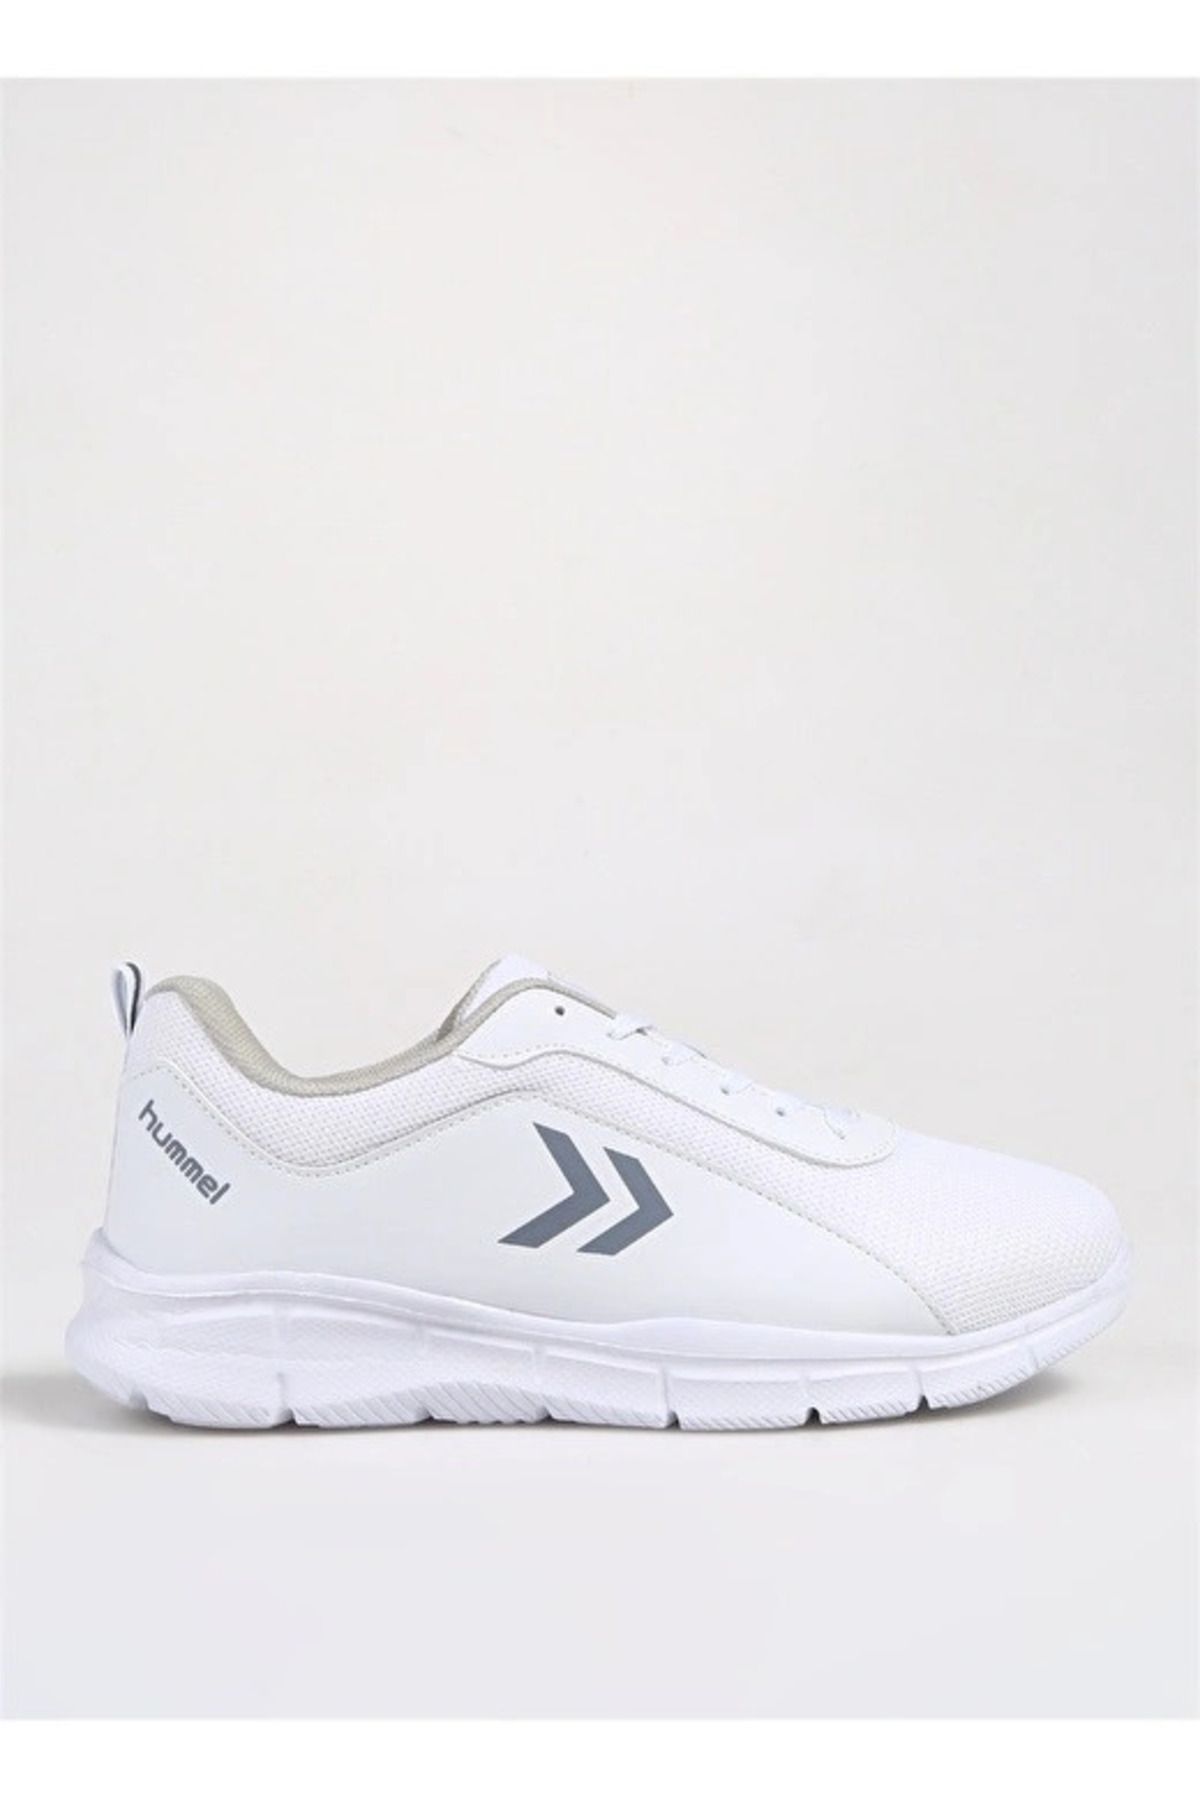 hummel Ismır - Unisex Beyaz Spor Ayakkabı